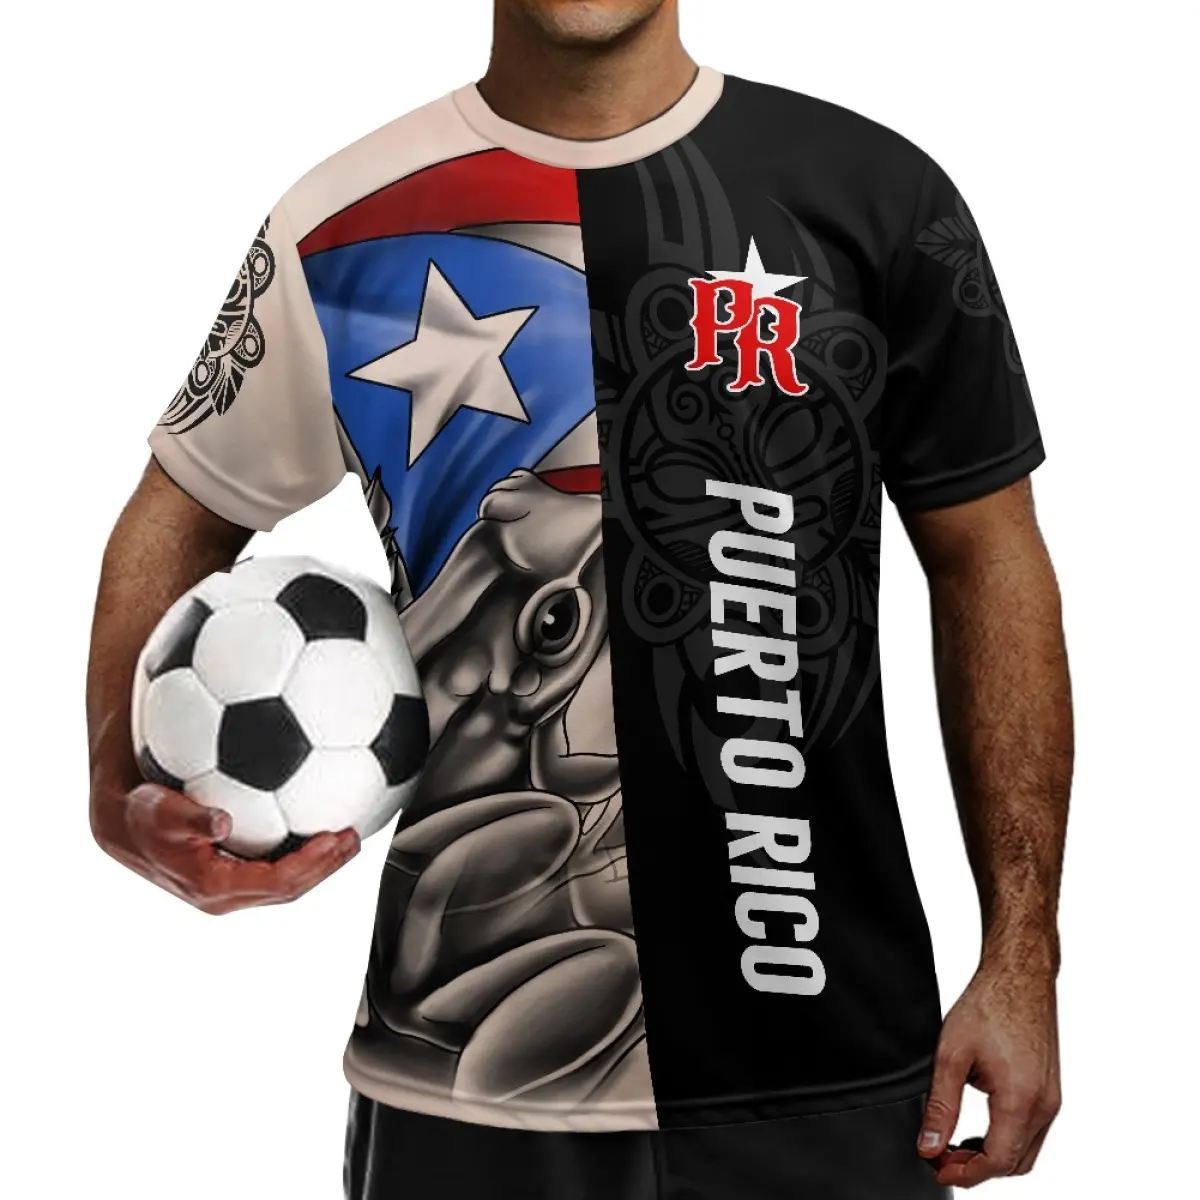 Camiseta de fútbol de Puerto Rico, uniforme de fútbol, estampado de Fitness a pedido, camisetas deportivas de manga corta de poliéster con estilo para hombres